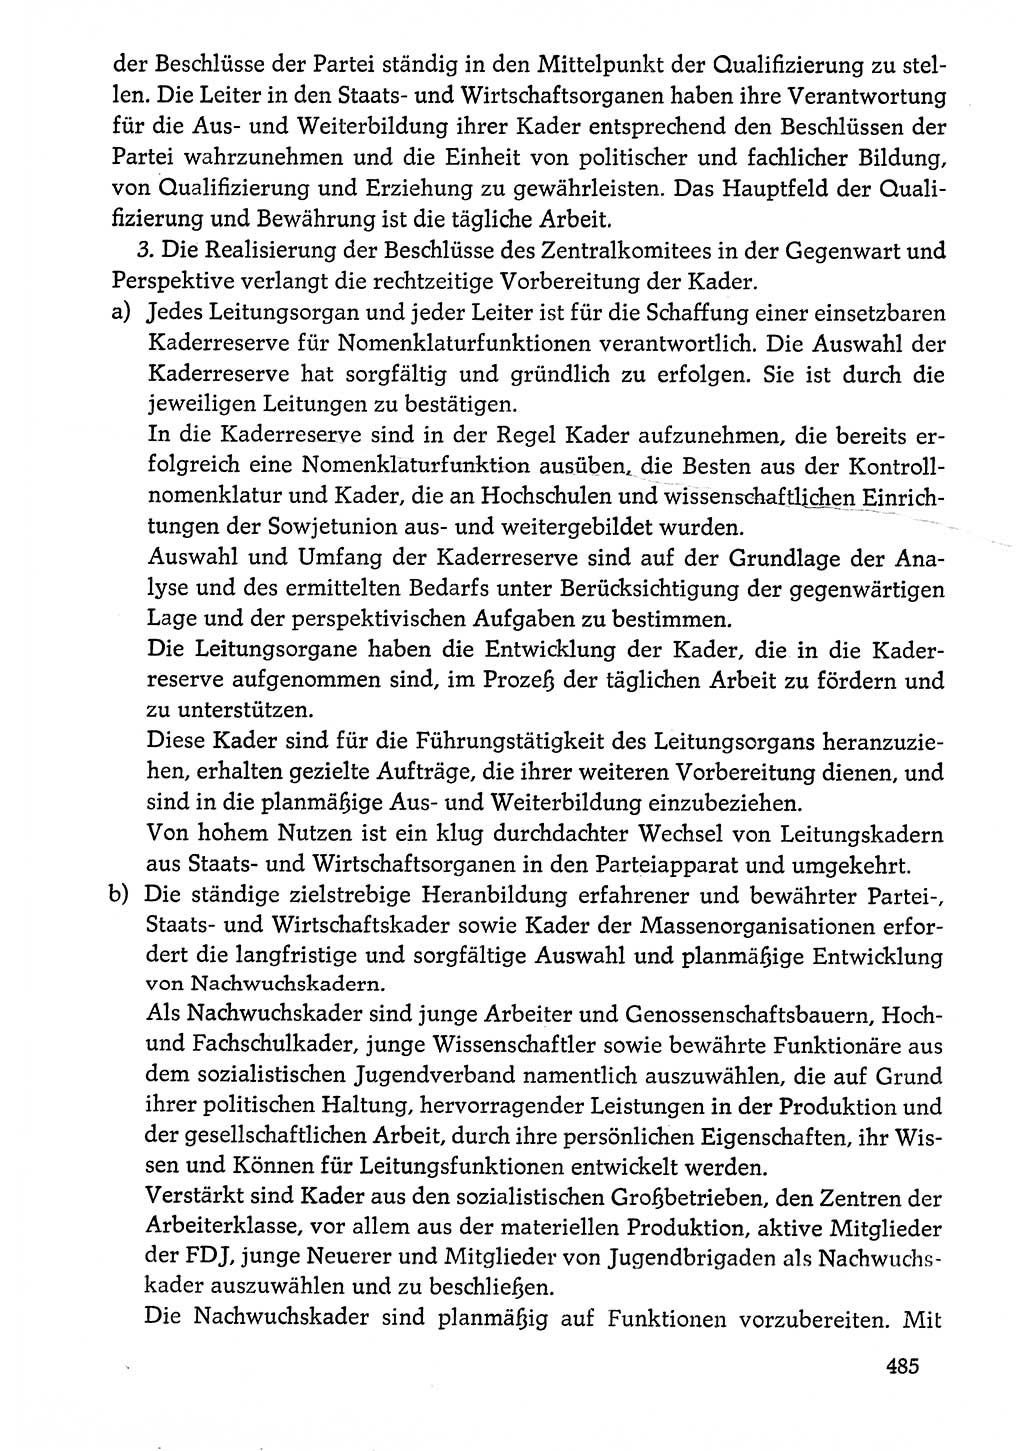 Dokumente der Sozialistischen Einheitspartei Deutschlands (SED) [Deutsche Demokratische Republik (DDR)] 1976-1977, Seite 485 (Dok. SED DDR 1976-1977, S. 485)